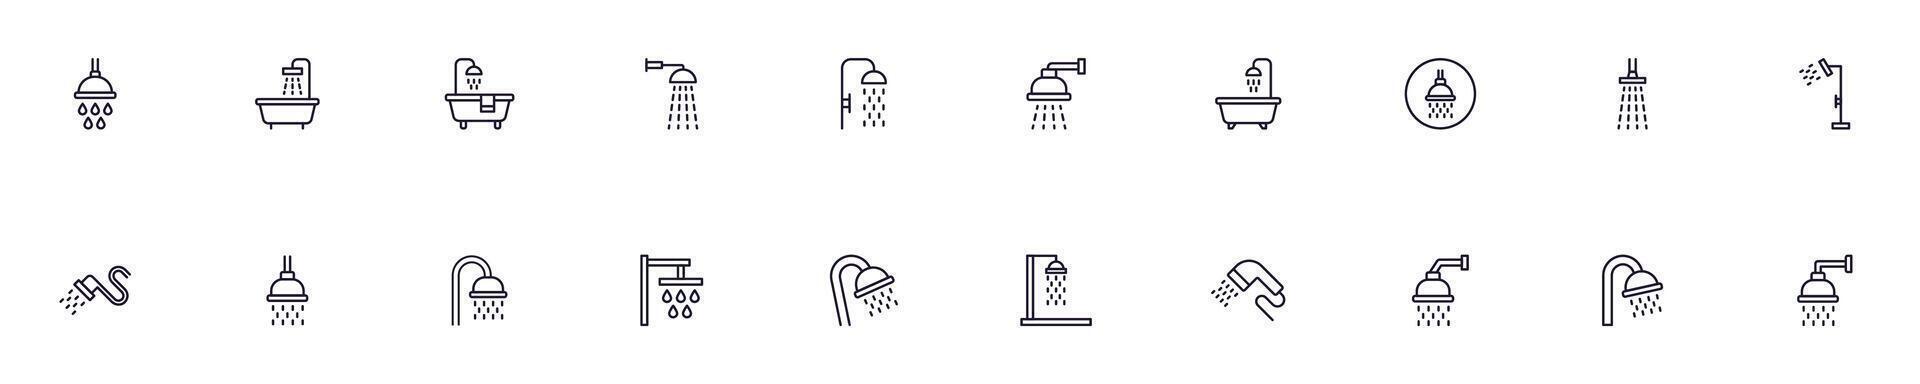 collezione di magro vettore immagini di doccia per ragnatela siti, giornali, articoli libro